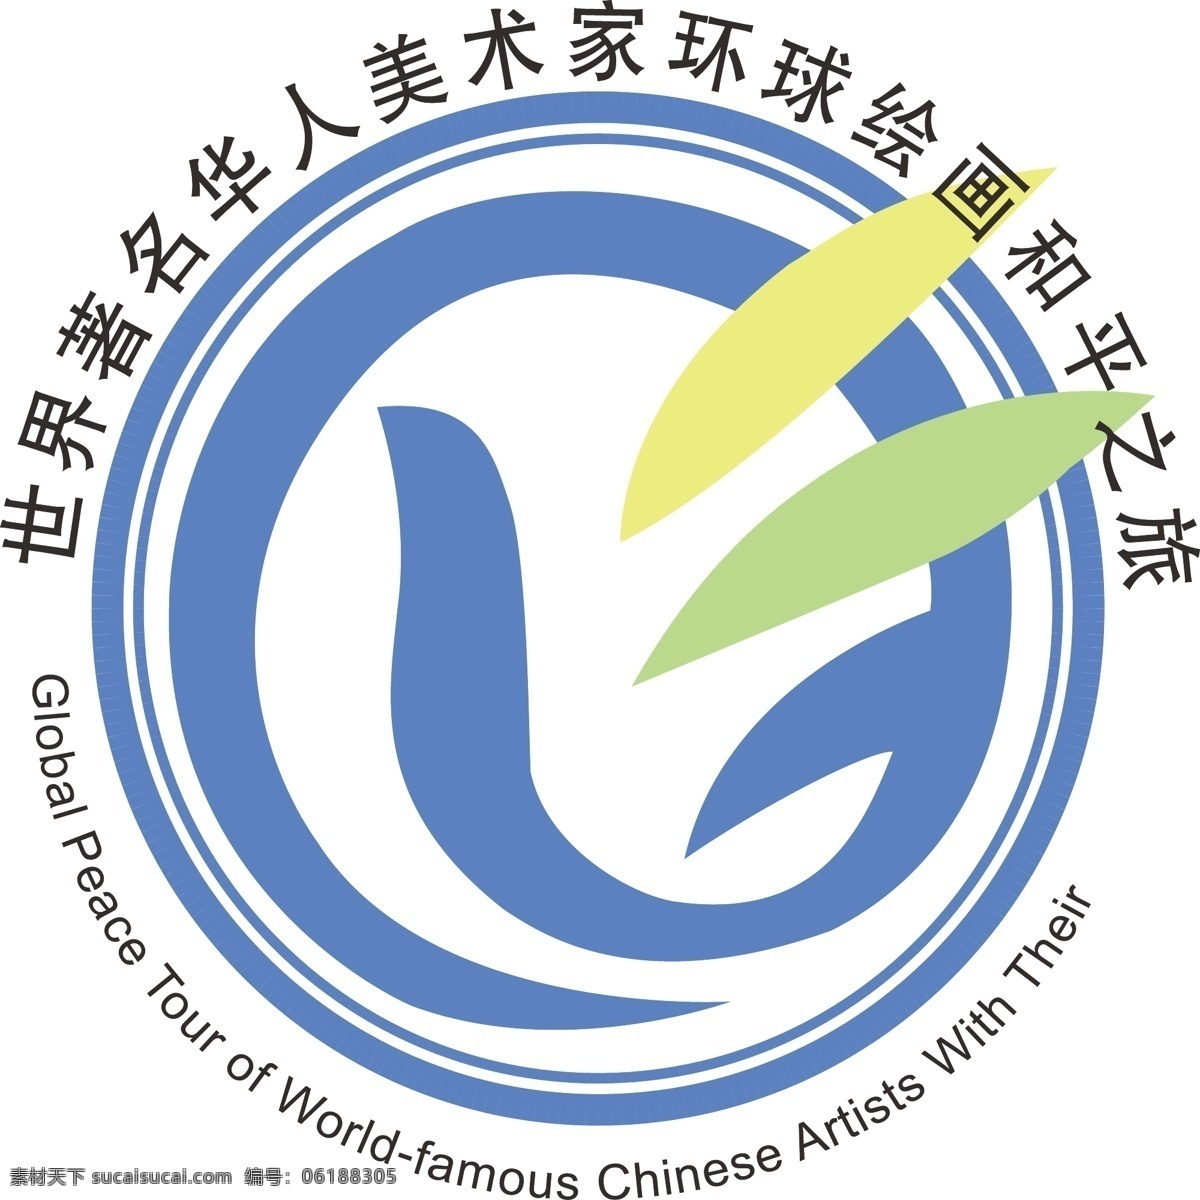 环球 绘画 和平 之旅 logo 标识标志图标 公共标识标志 和平标志 和平之旅 和平标示 世界标志 国际和平标志 矢量 psd源文件 logo设计